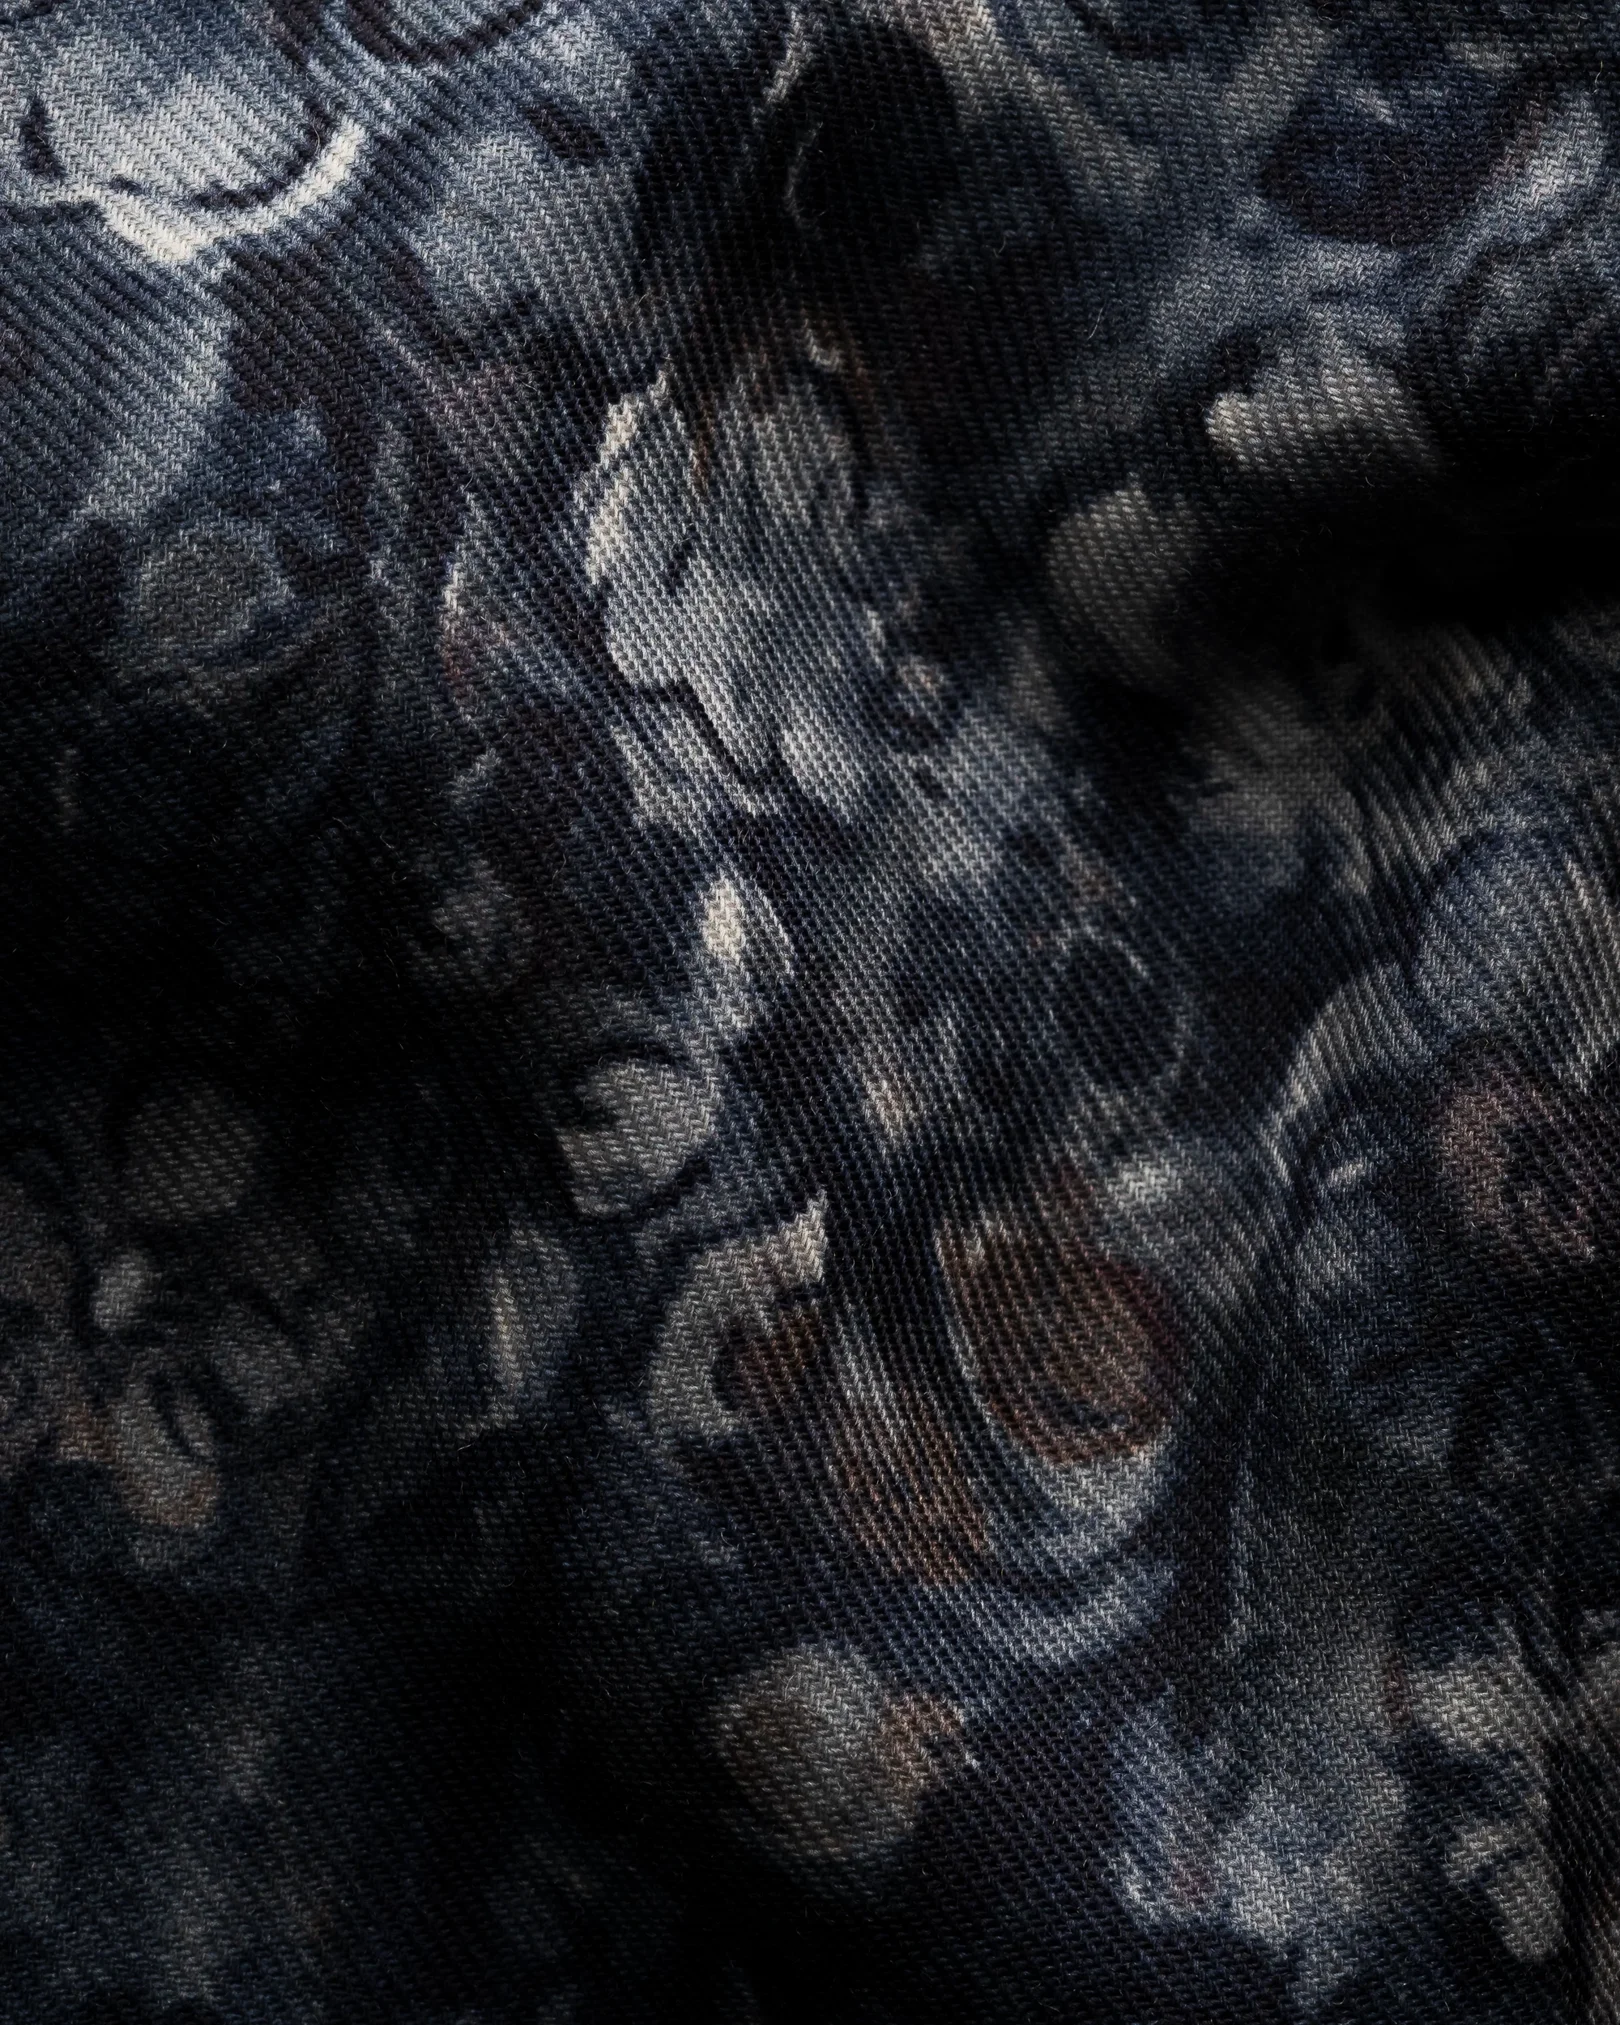 Eton - floral merino shirt